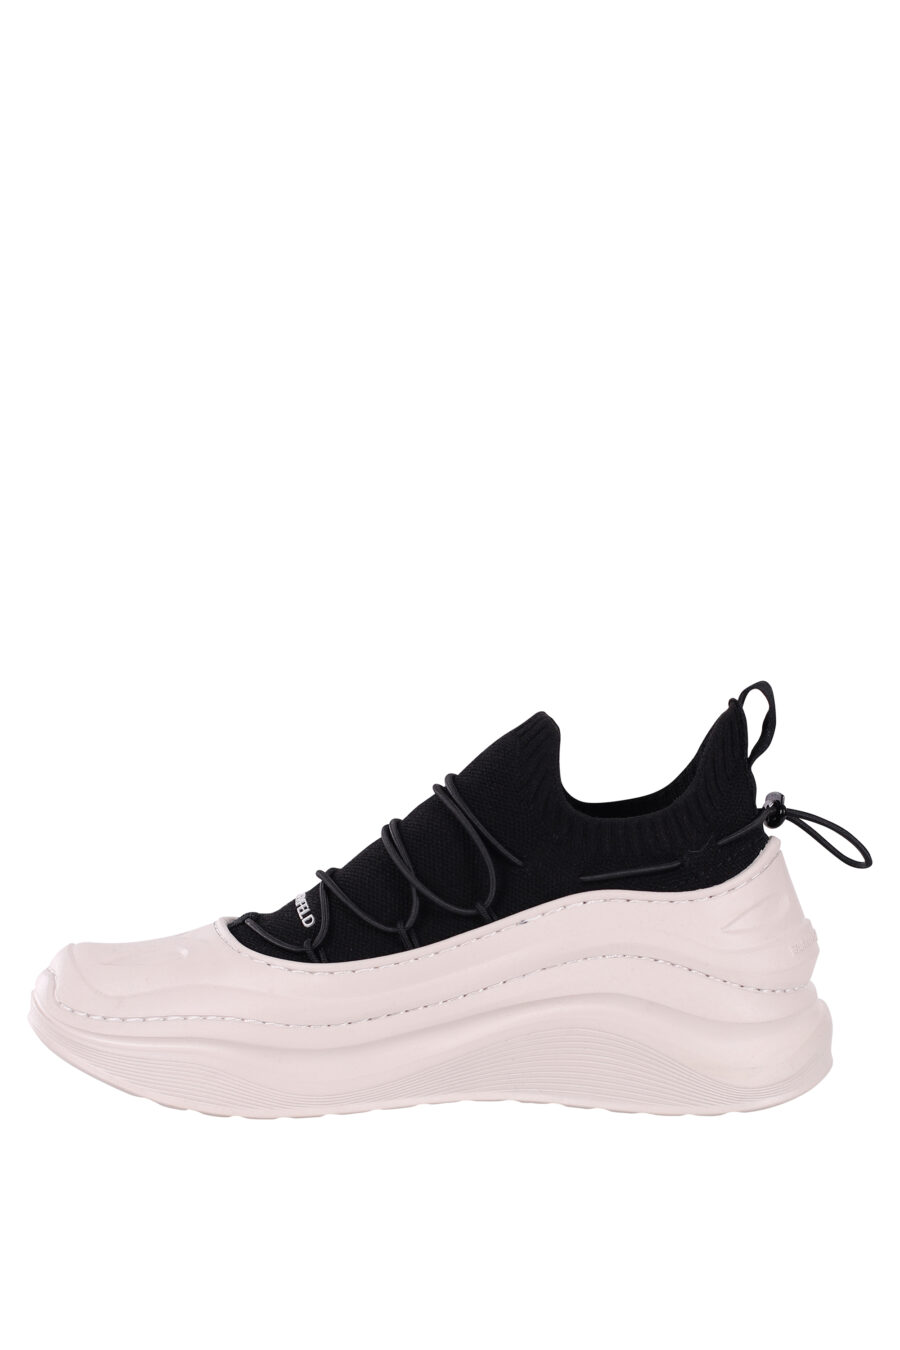 Zapatillas bicolor blancas y negras con suela blanca ondulada - IMG 5878